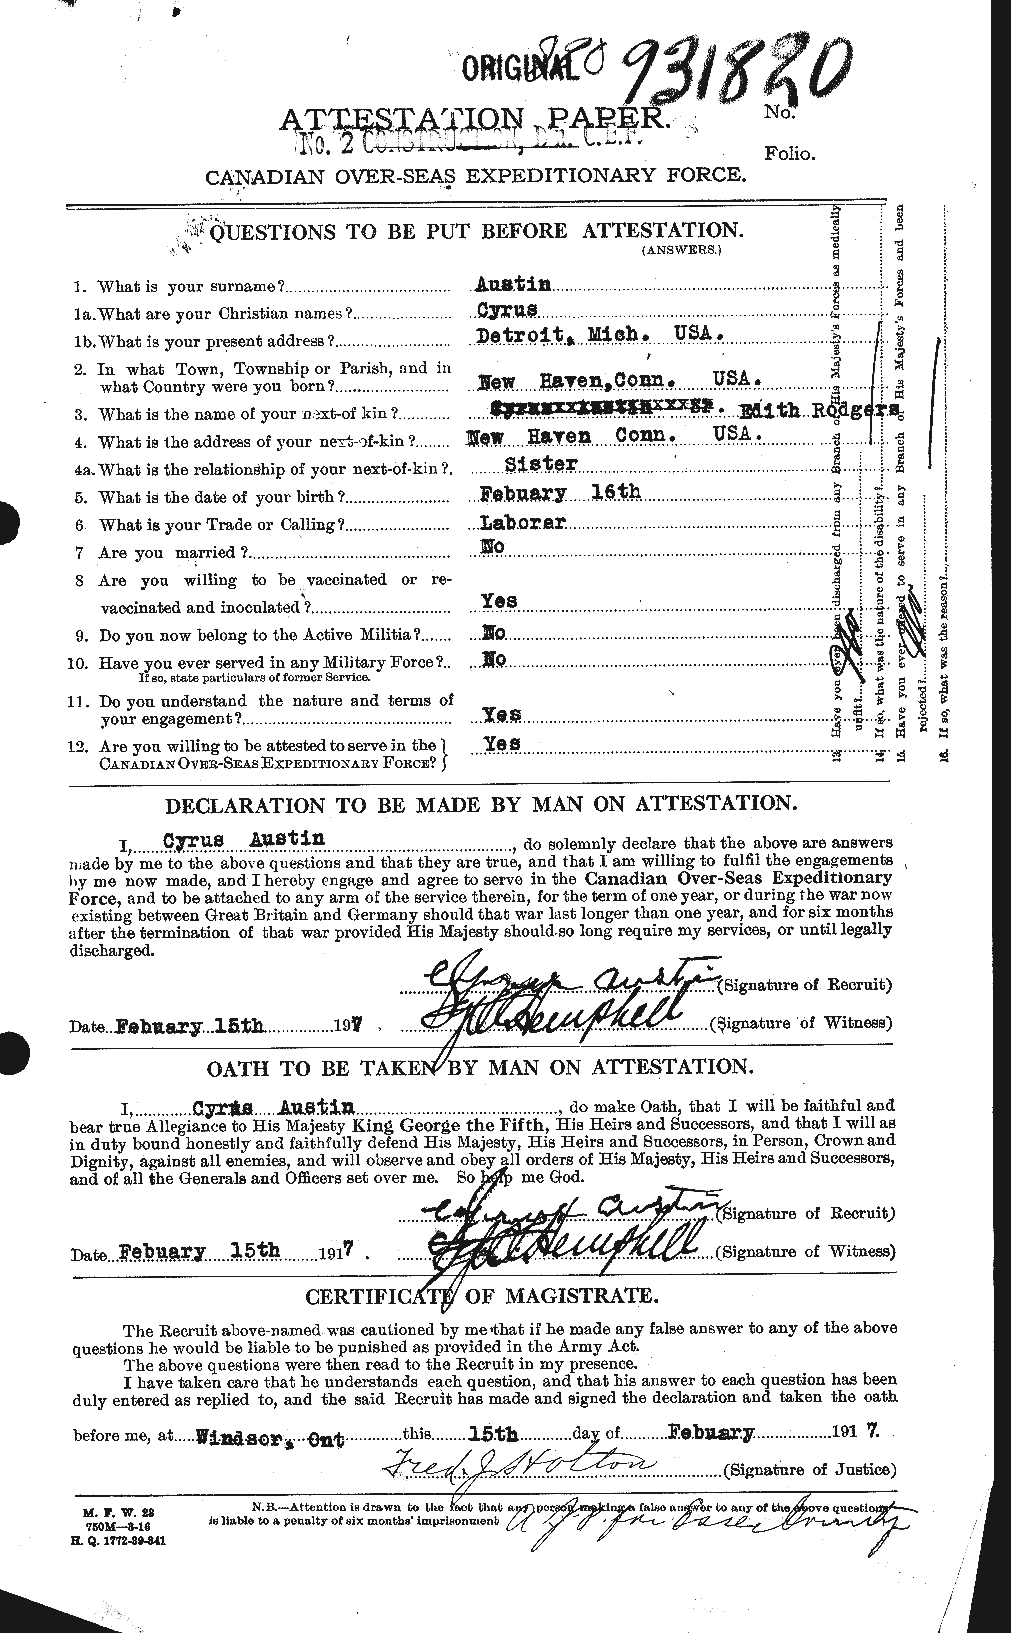 Dossiers du Personnel de la Première Guerre mondiale - CEC 215437a